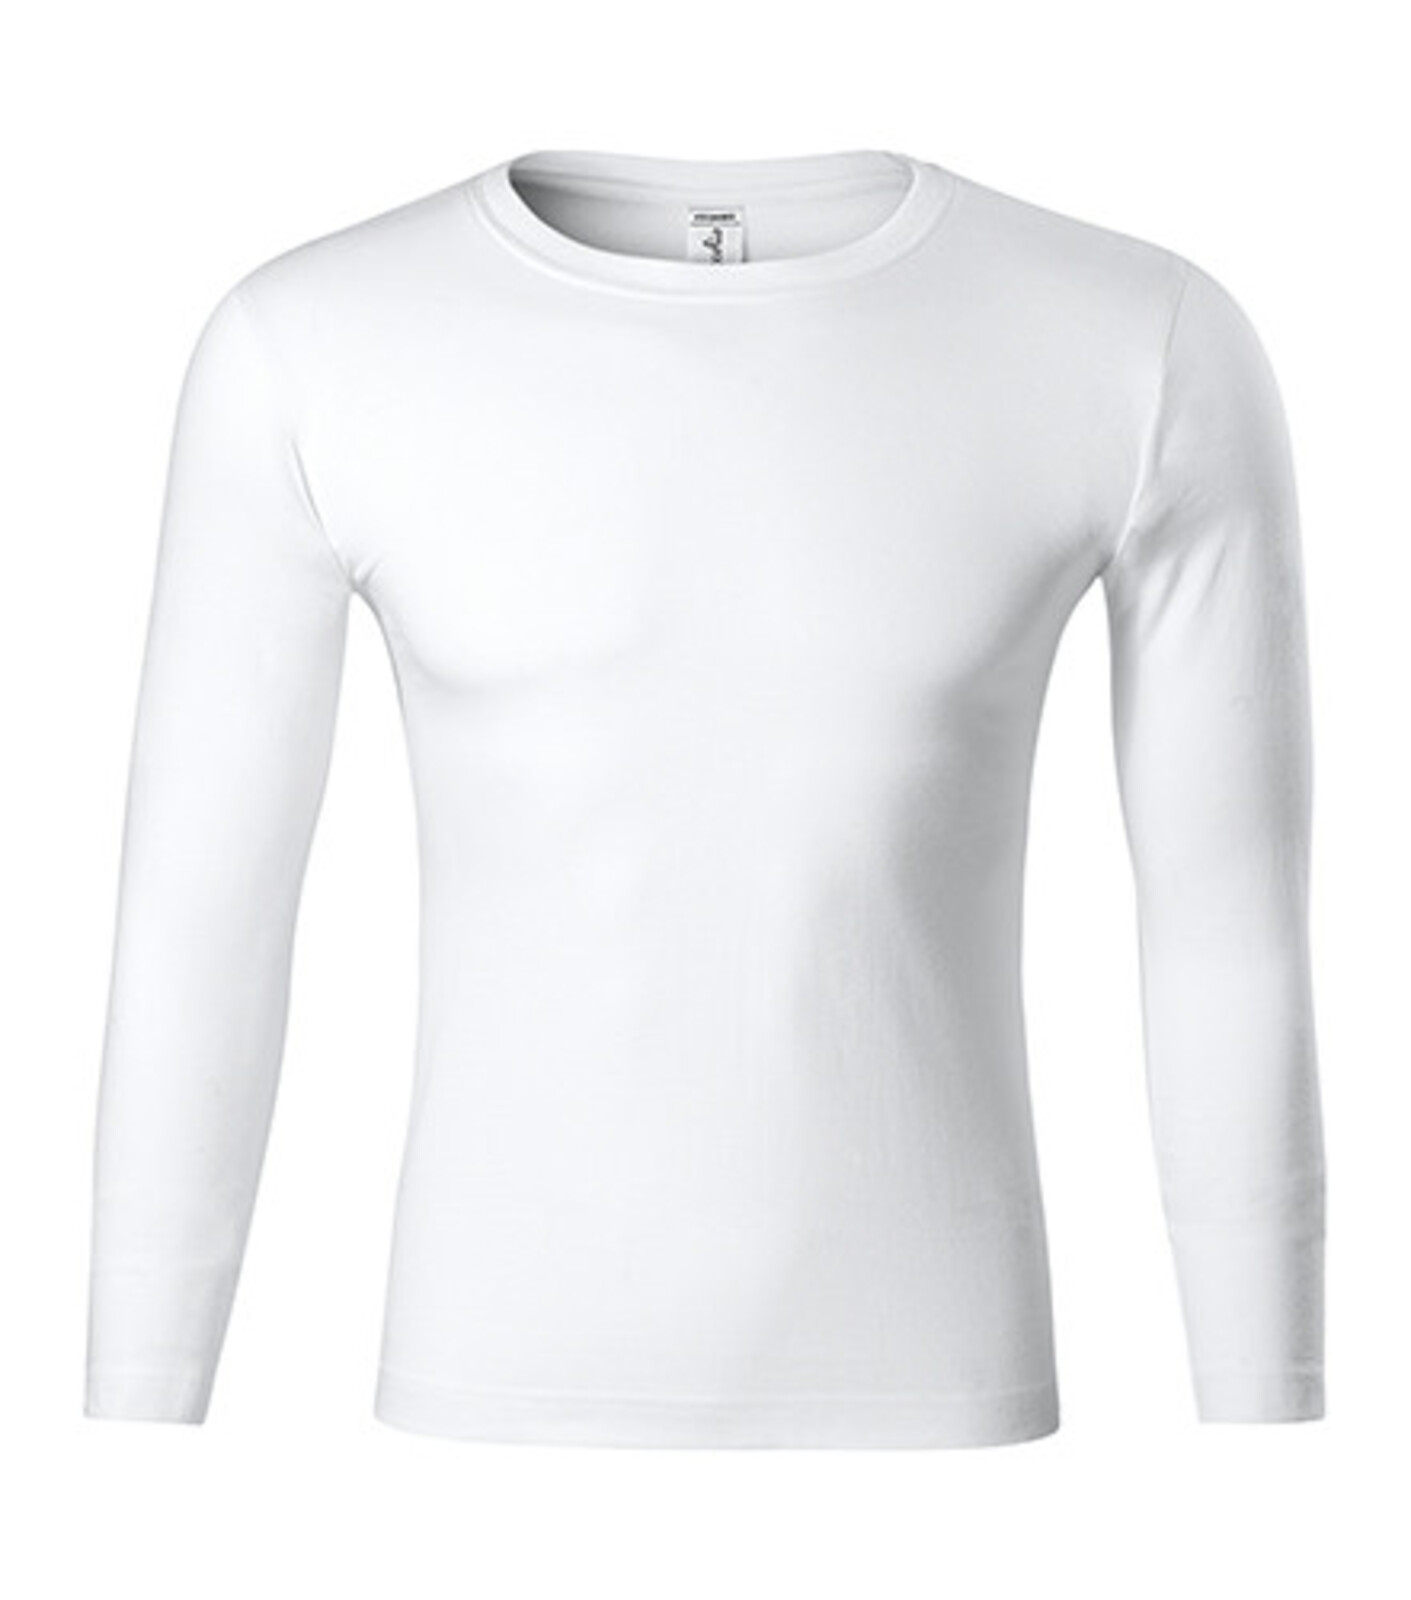 Unisex tričko s dlhým rukávom Progress LS P75 - veľkosť: L, farba: biela